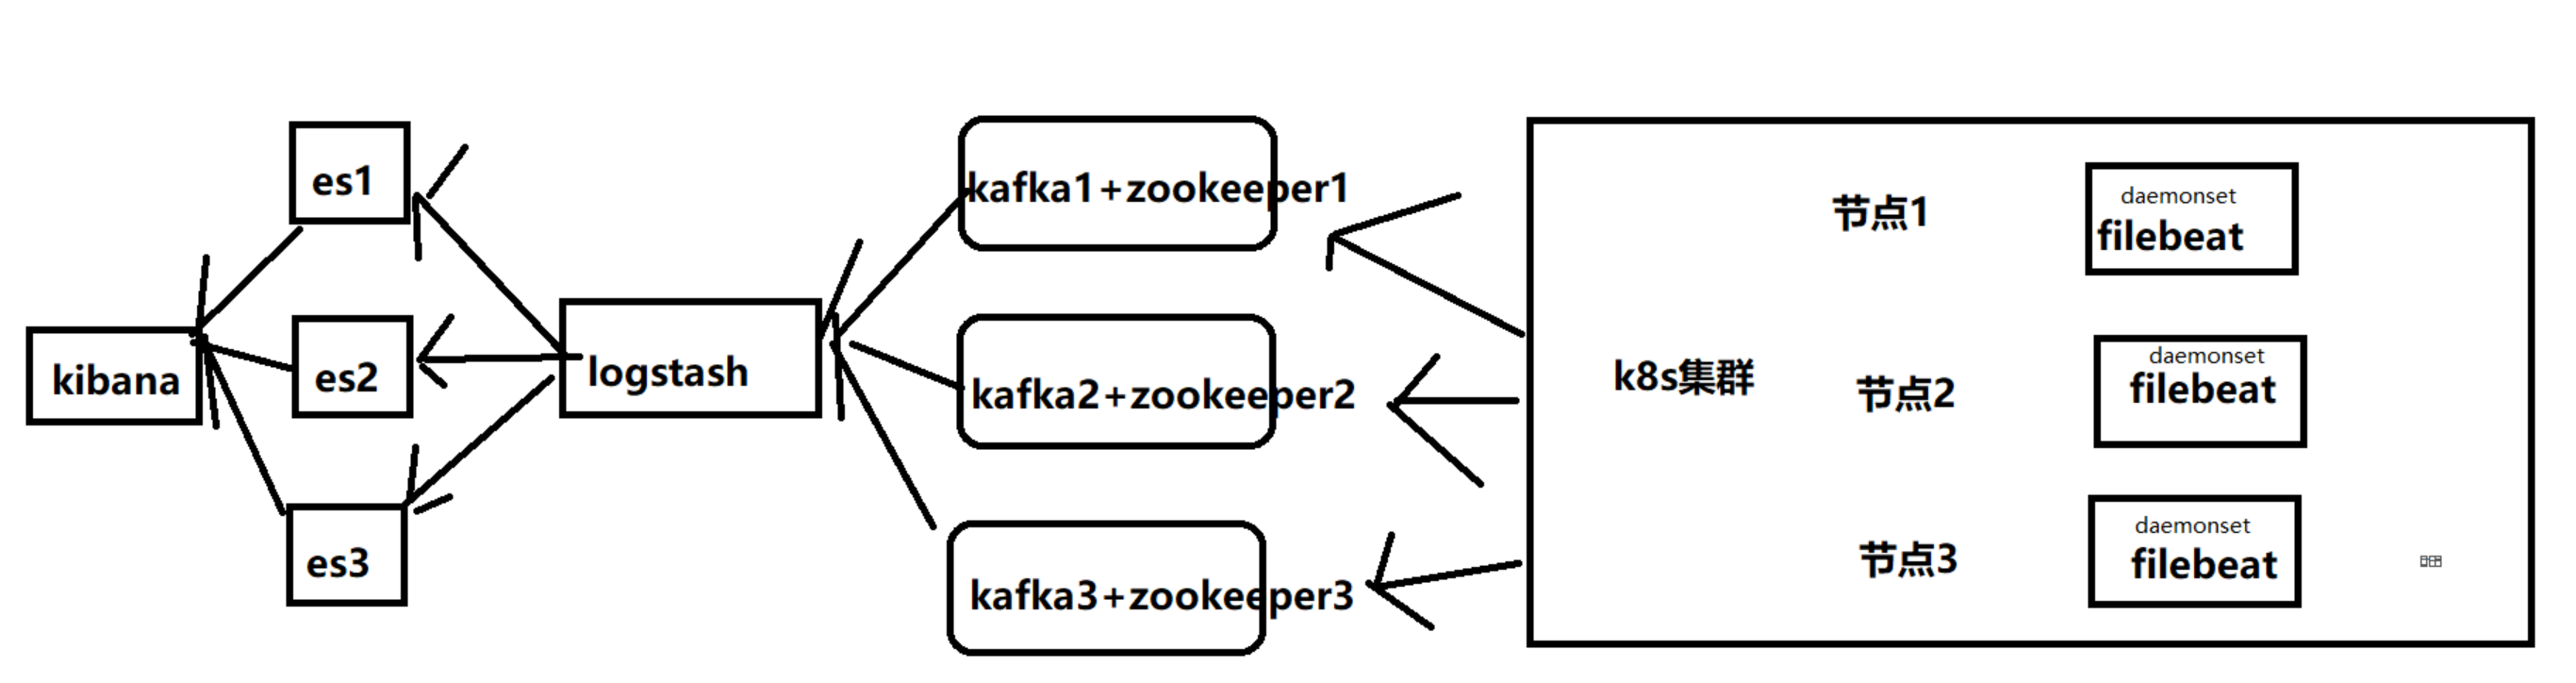 收集日志方式1：k8s集群通过ELK收集容器控制台输出日志(logstash方式)_kafka_02